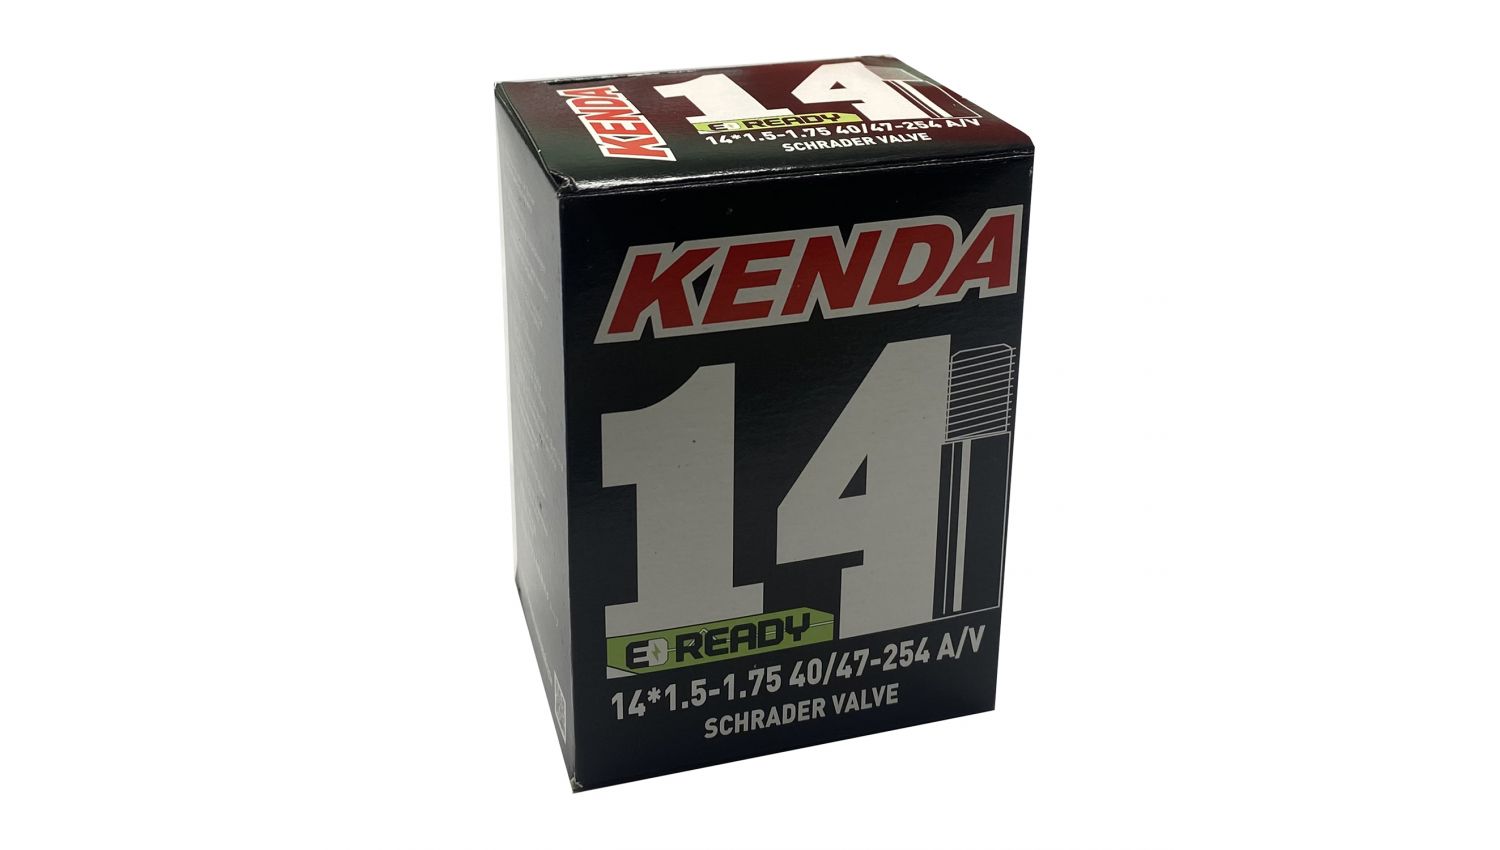 Камера KENDA 14х1.5/1.75, A/V, 40/47-254, в коробке